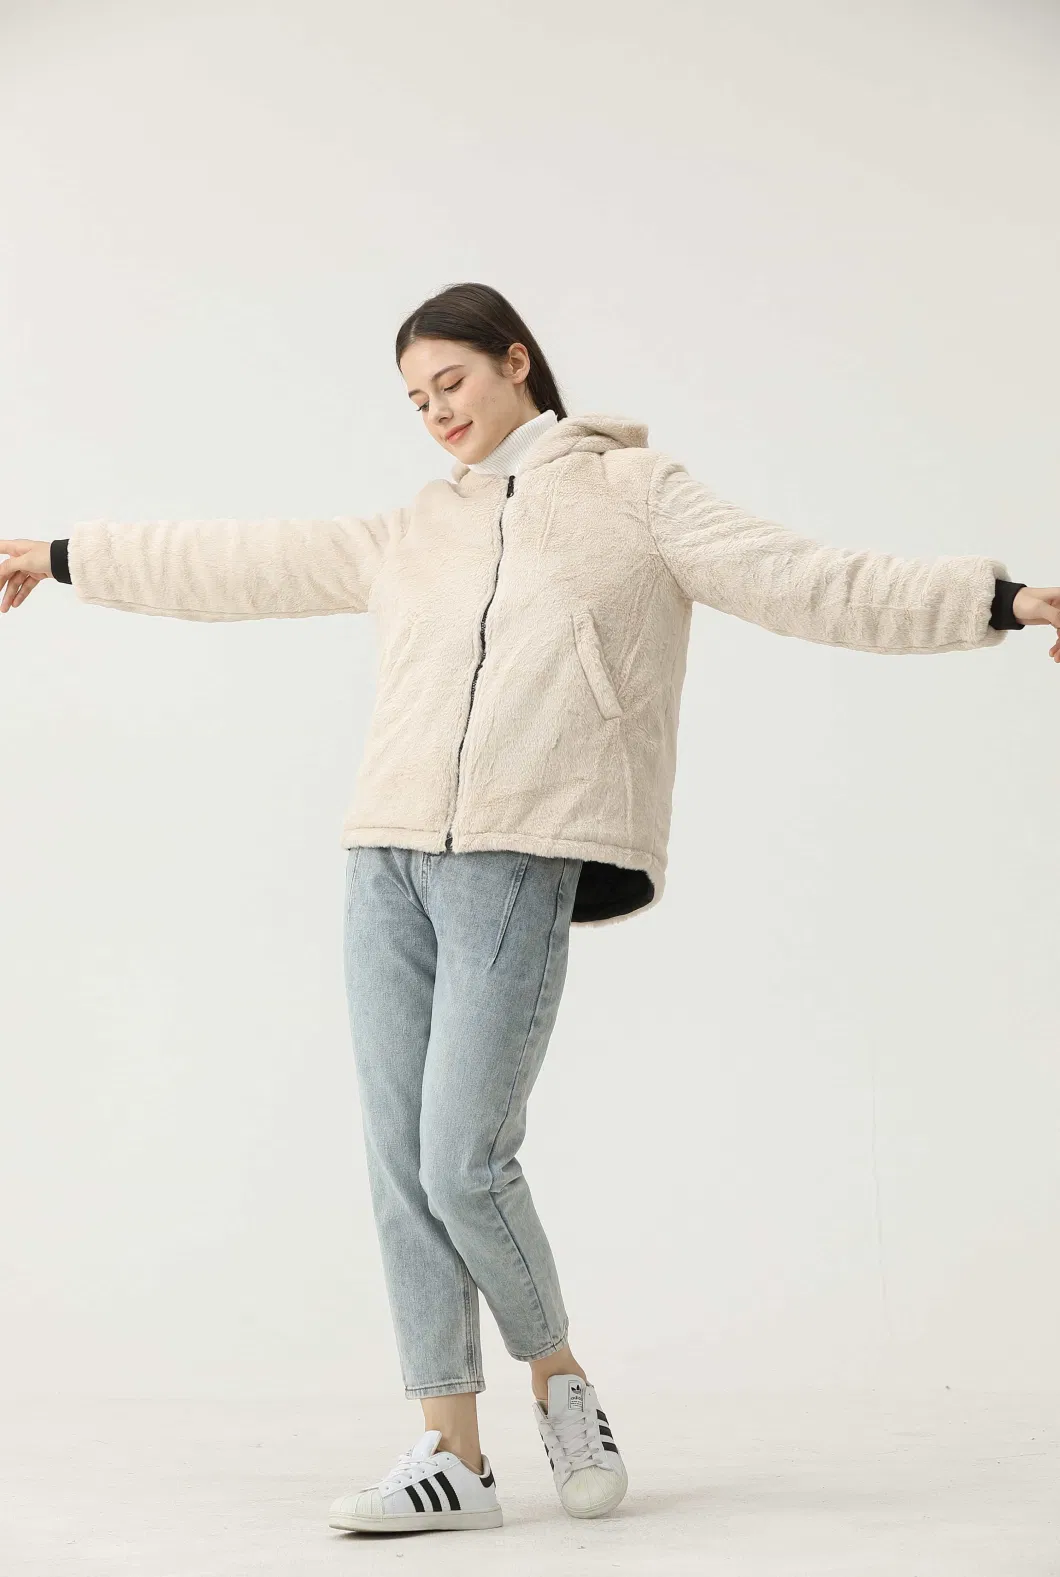 Lulusen 2023 Winter Varsity Casual Luxury Sherpa Fleece Coat Hoodie Warm Pile Fabric Jackets for Women